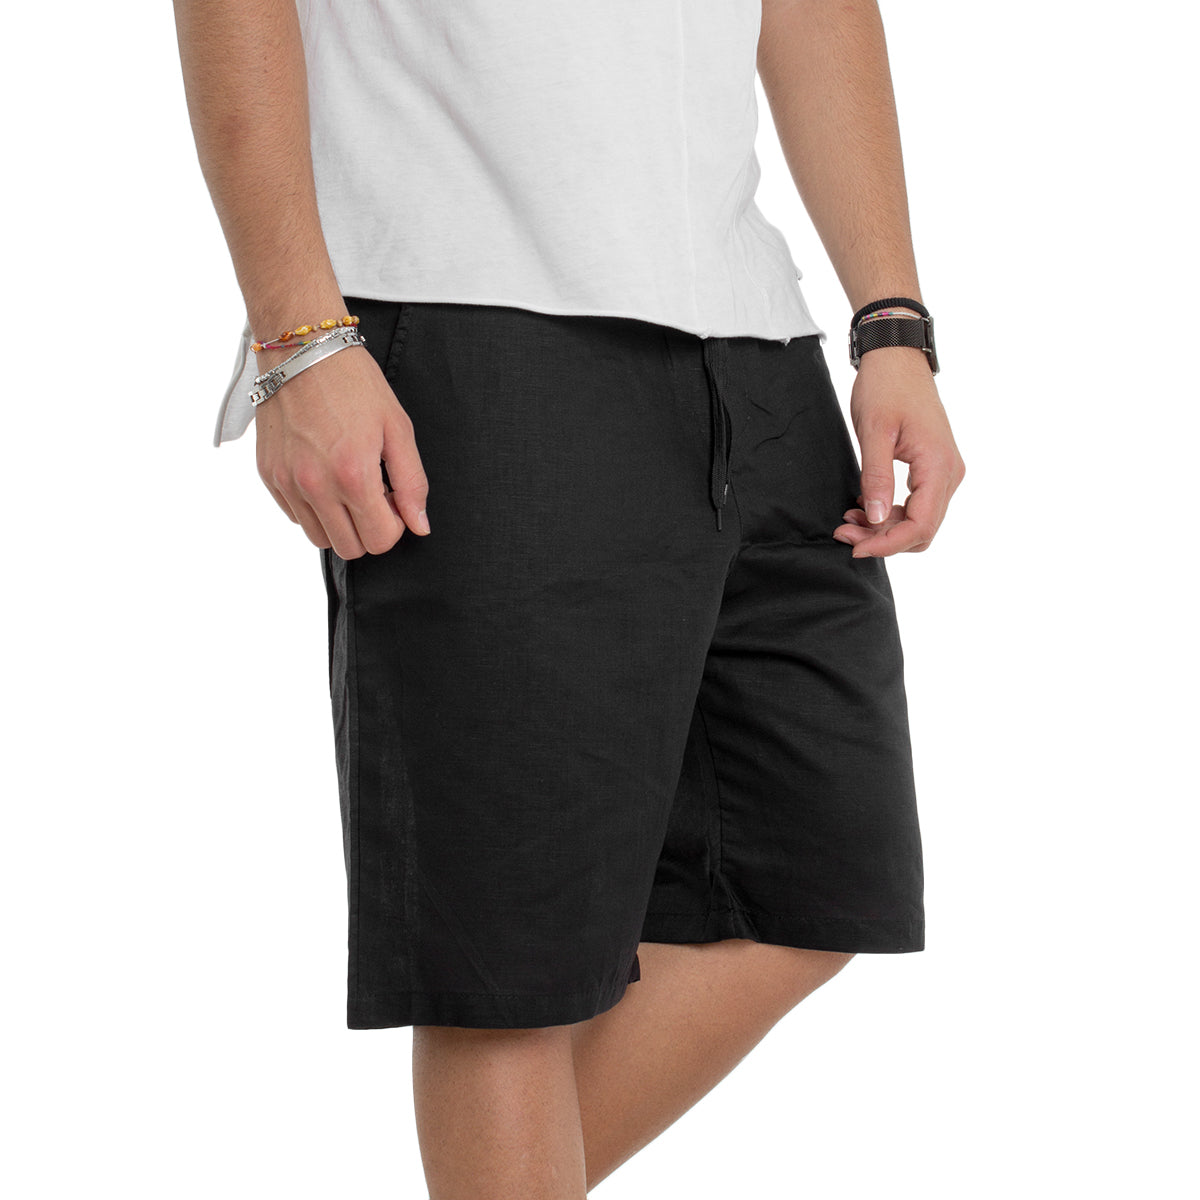 Bermuda Shorts Men's Solid Color Black Elastic Comfort GIOSAL-PC1233A